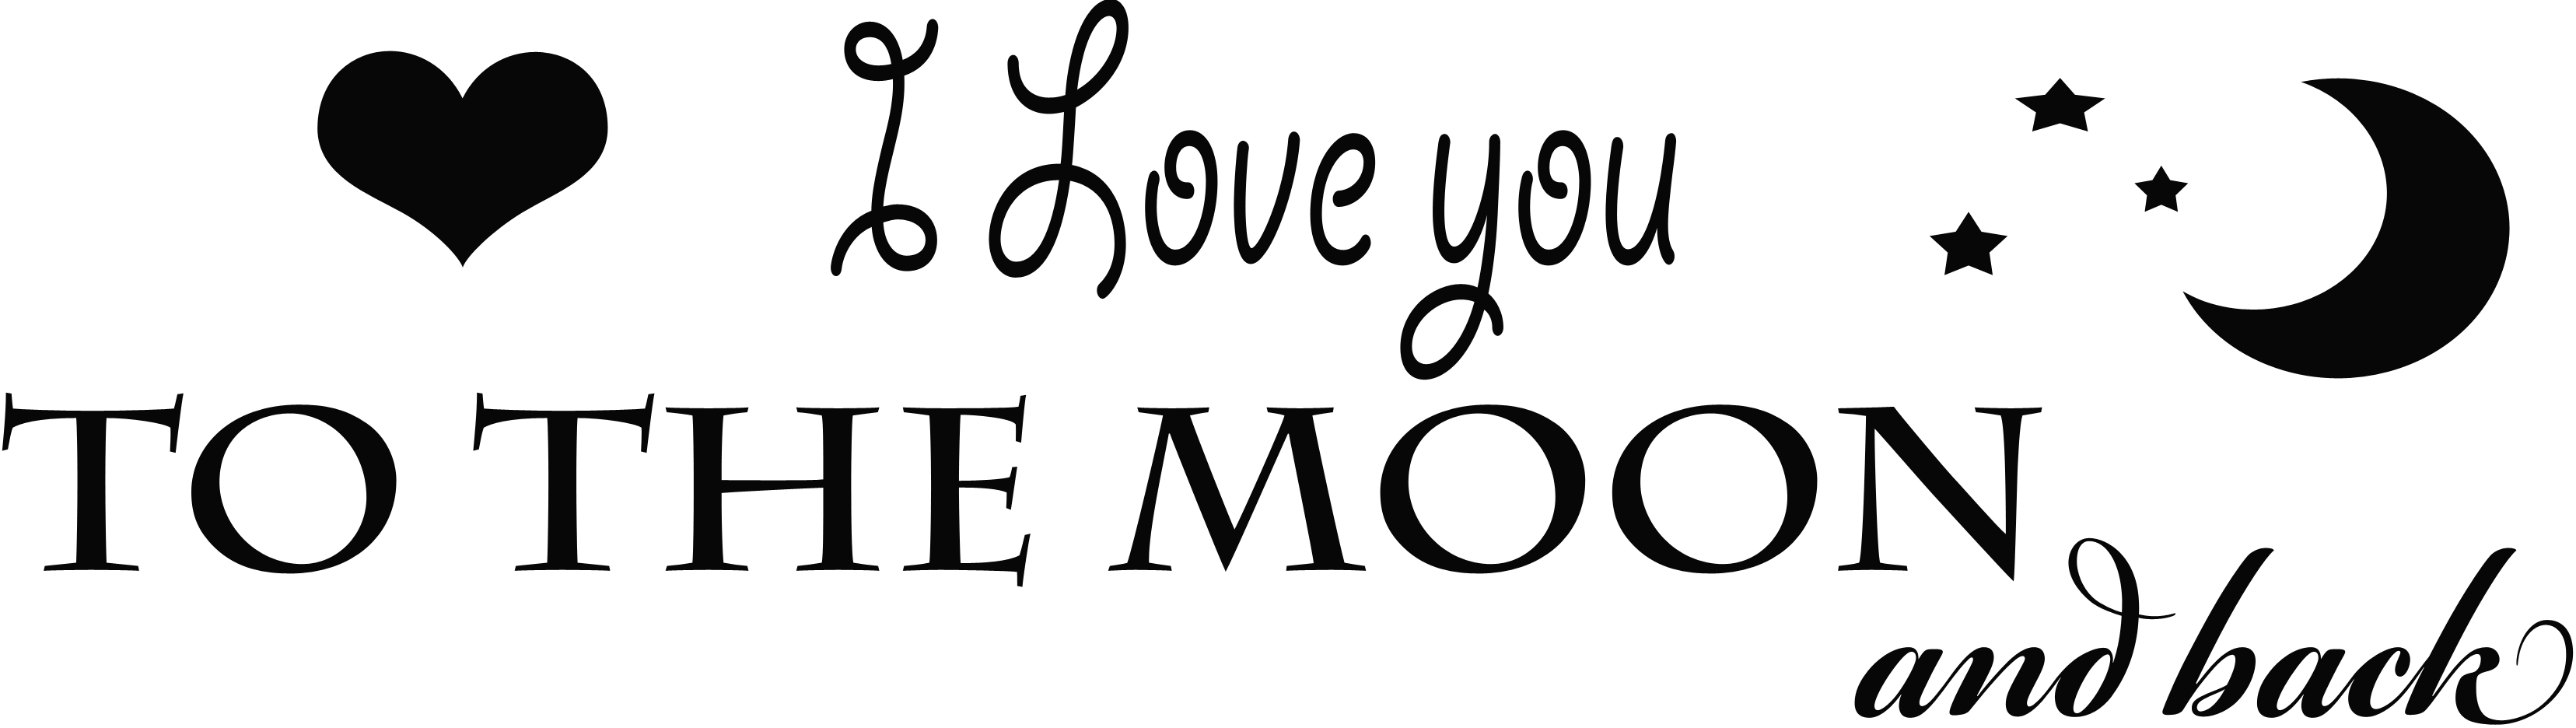 Я люблю тебя на Луну и обратно PNG прозрачное изображение